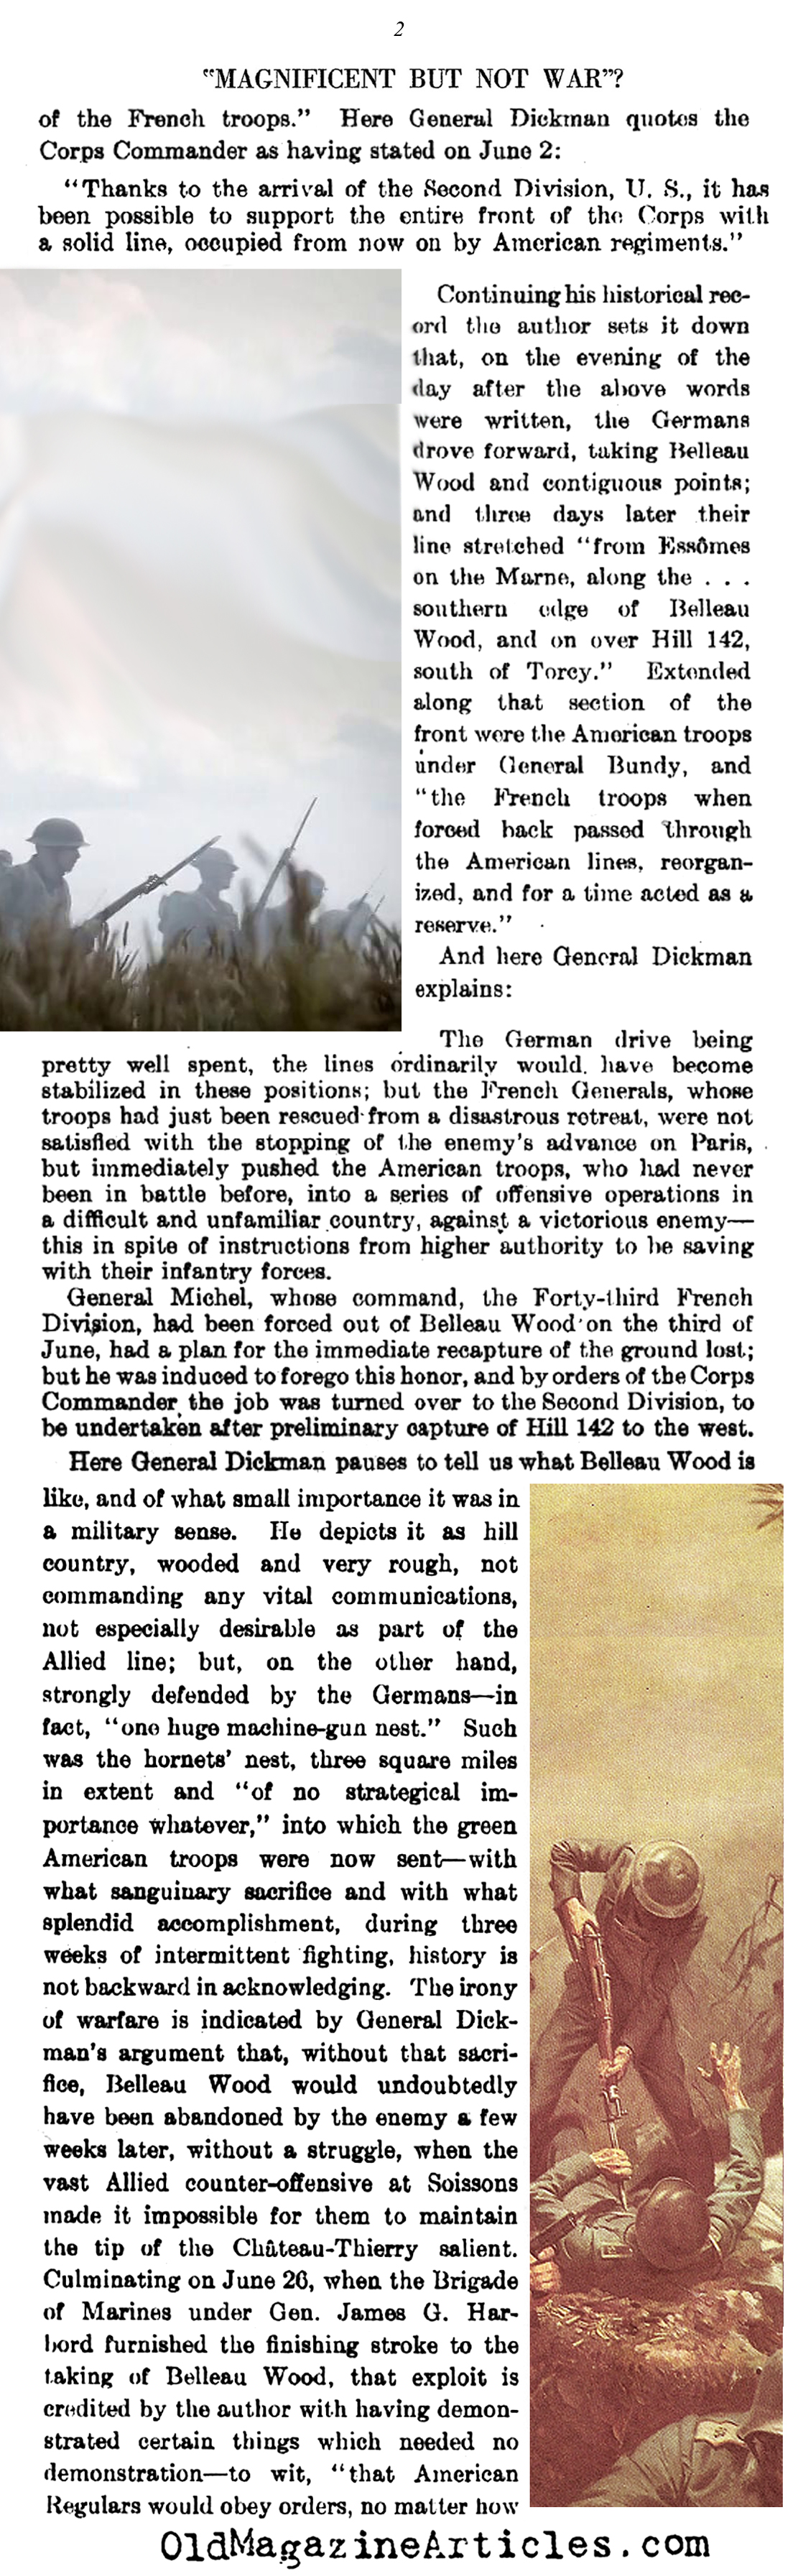 The Battle of Belleau Wood in Retropspect (Literary Digest, 1927)